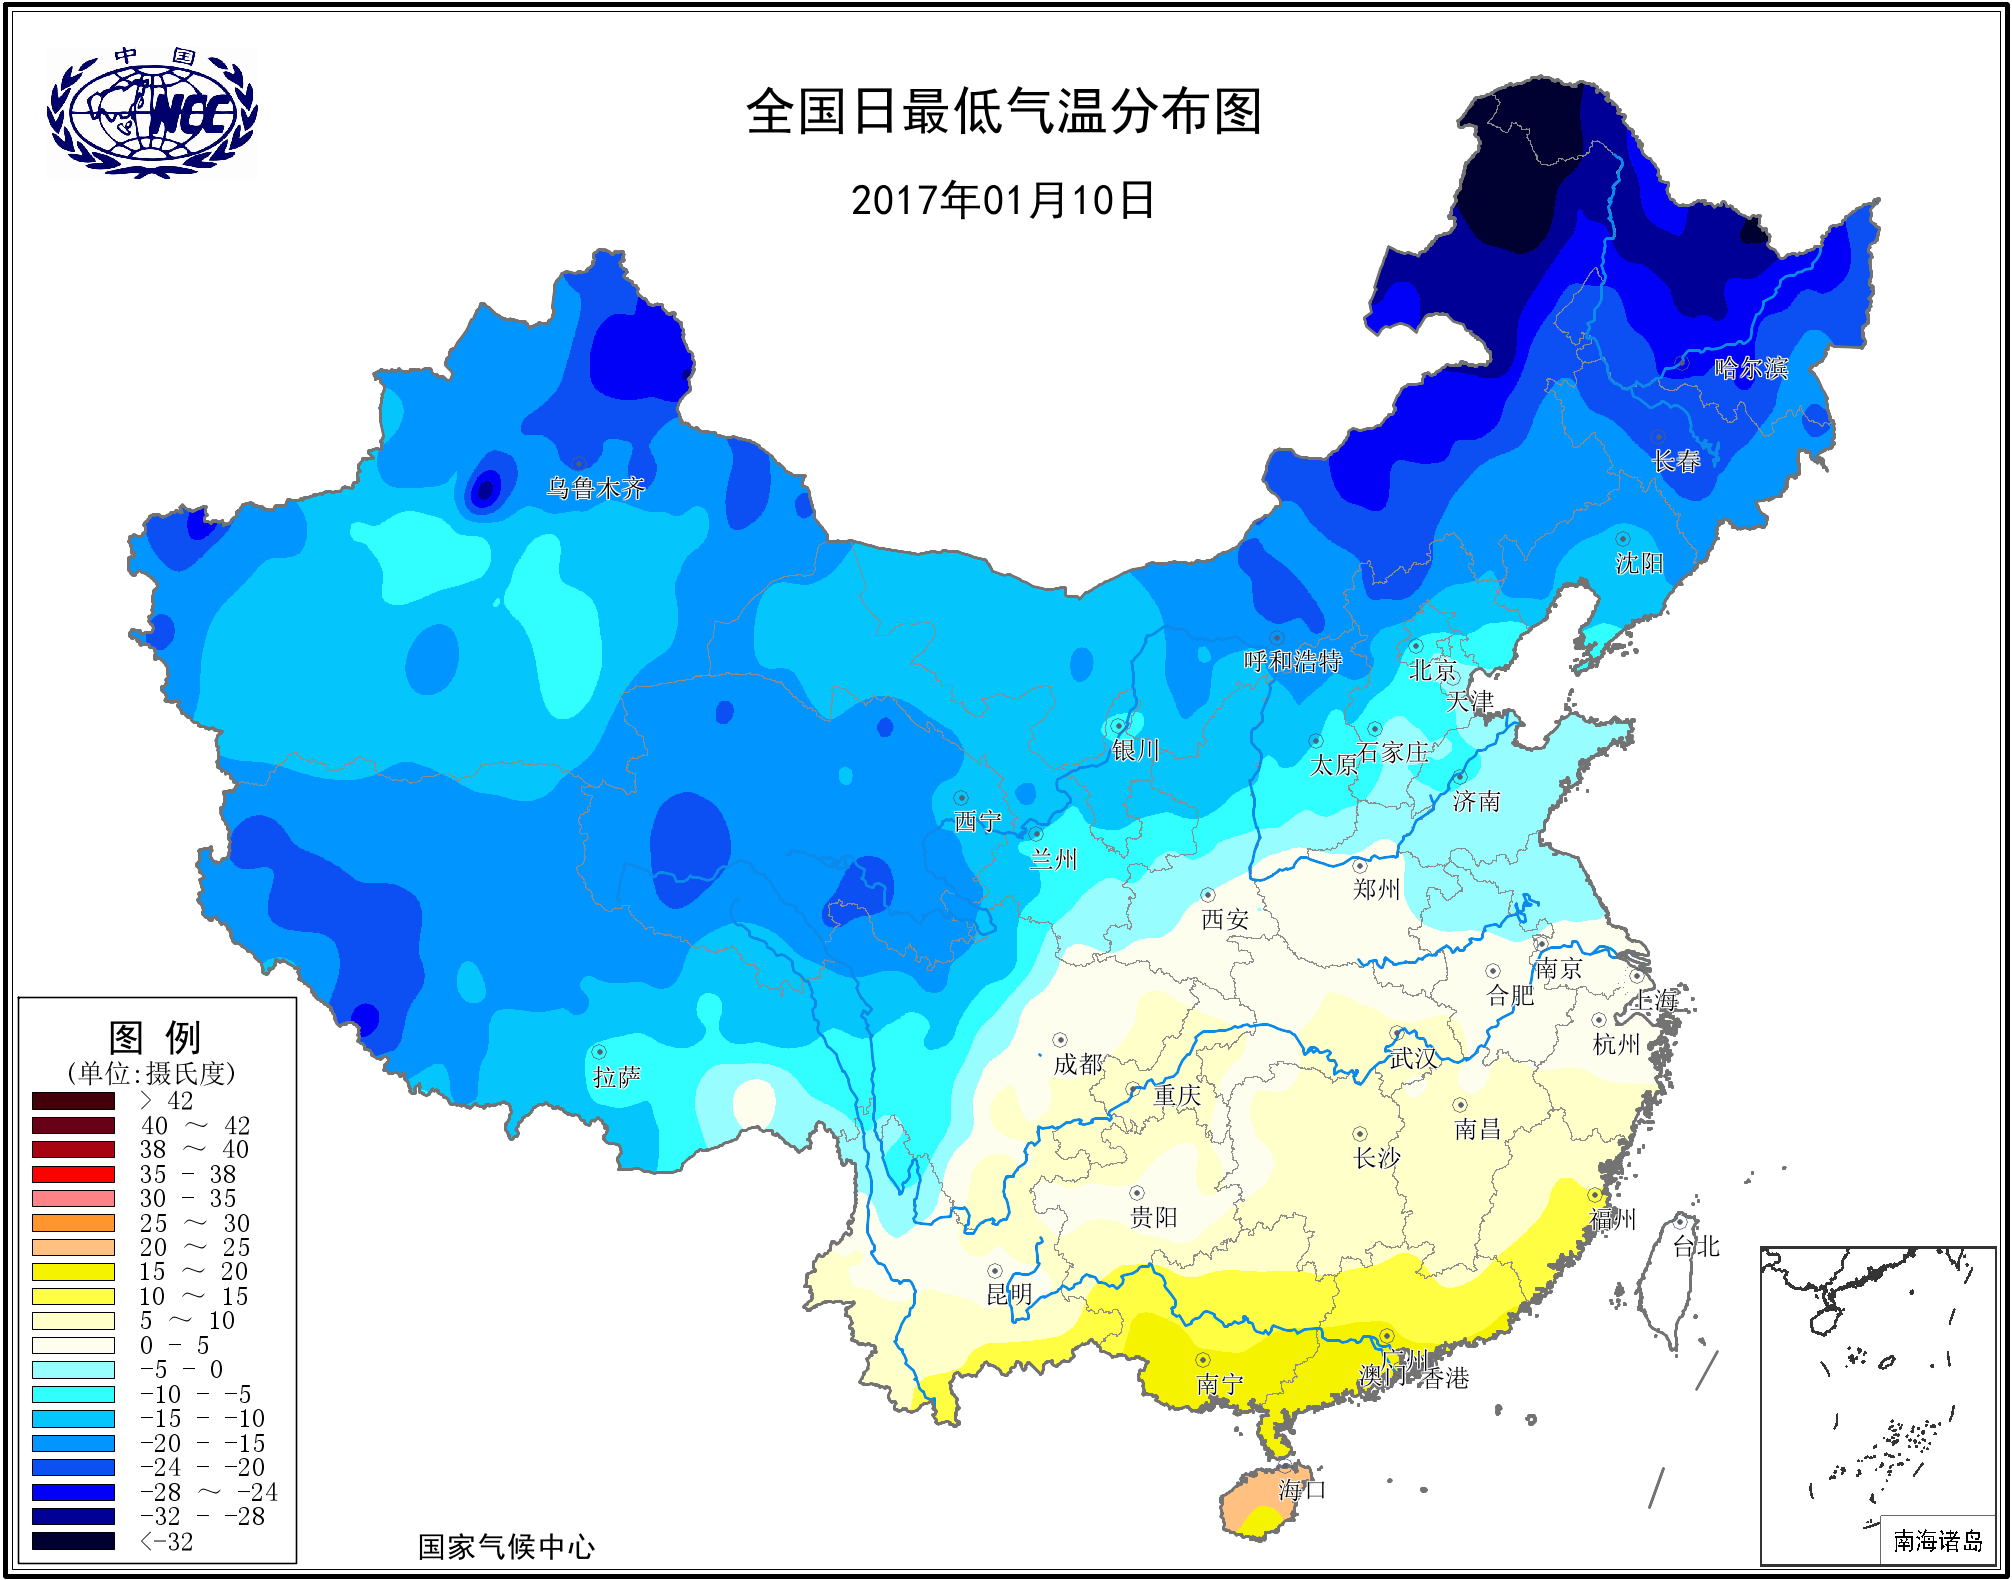 中国 1951 — 2018 年气温和降水的时空演变特征研究